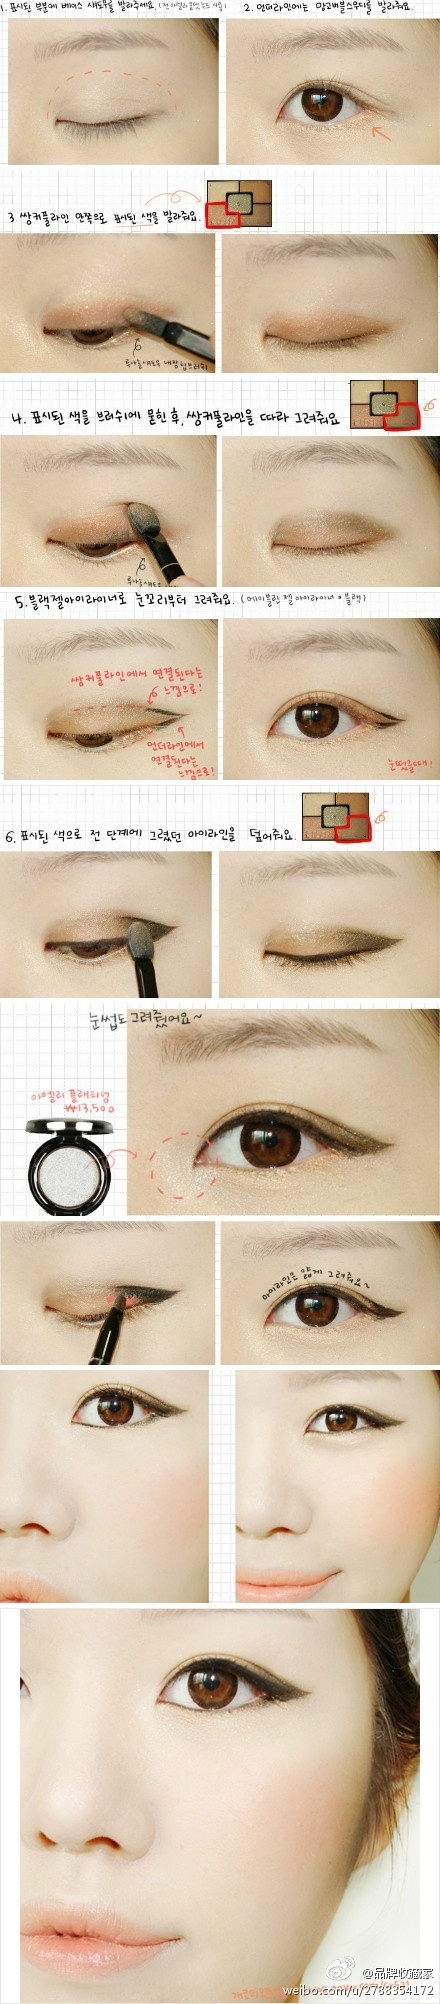 chinese eye makeup